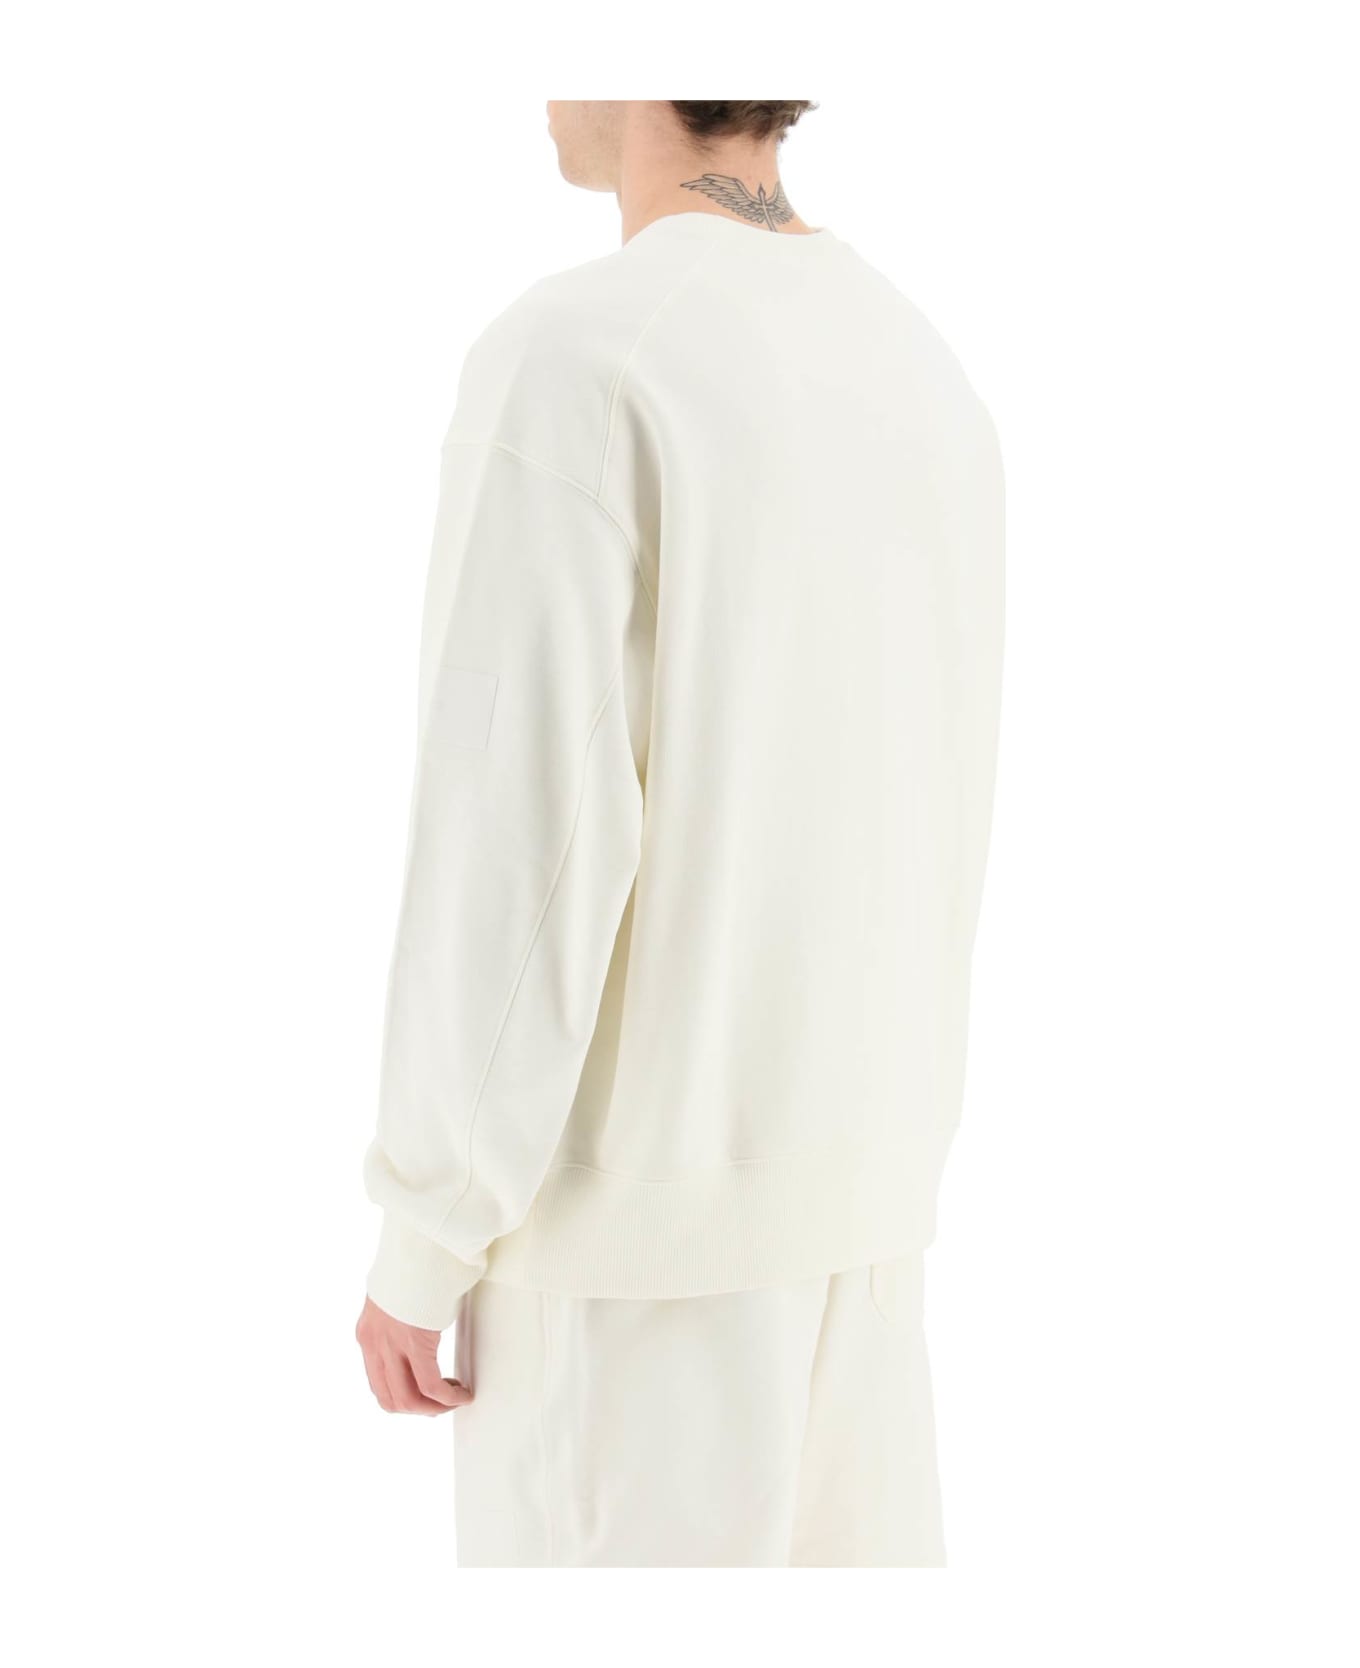 Y-3 Crew Sweatshirt In White Cotton - OFFWHITE